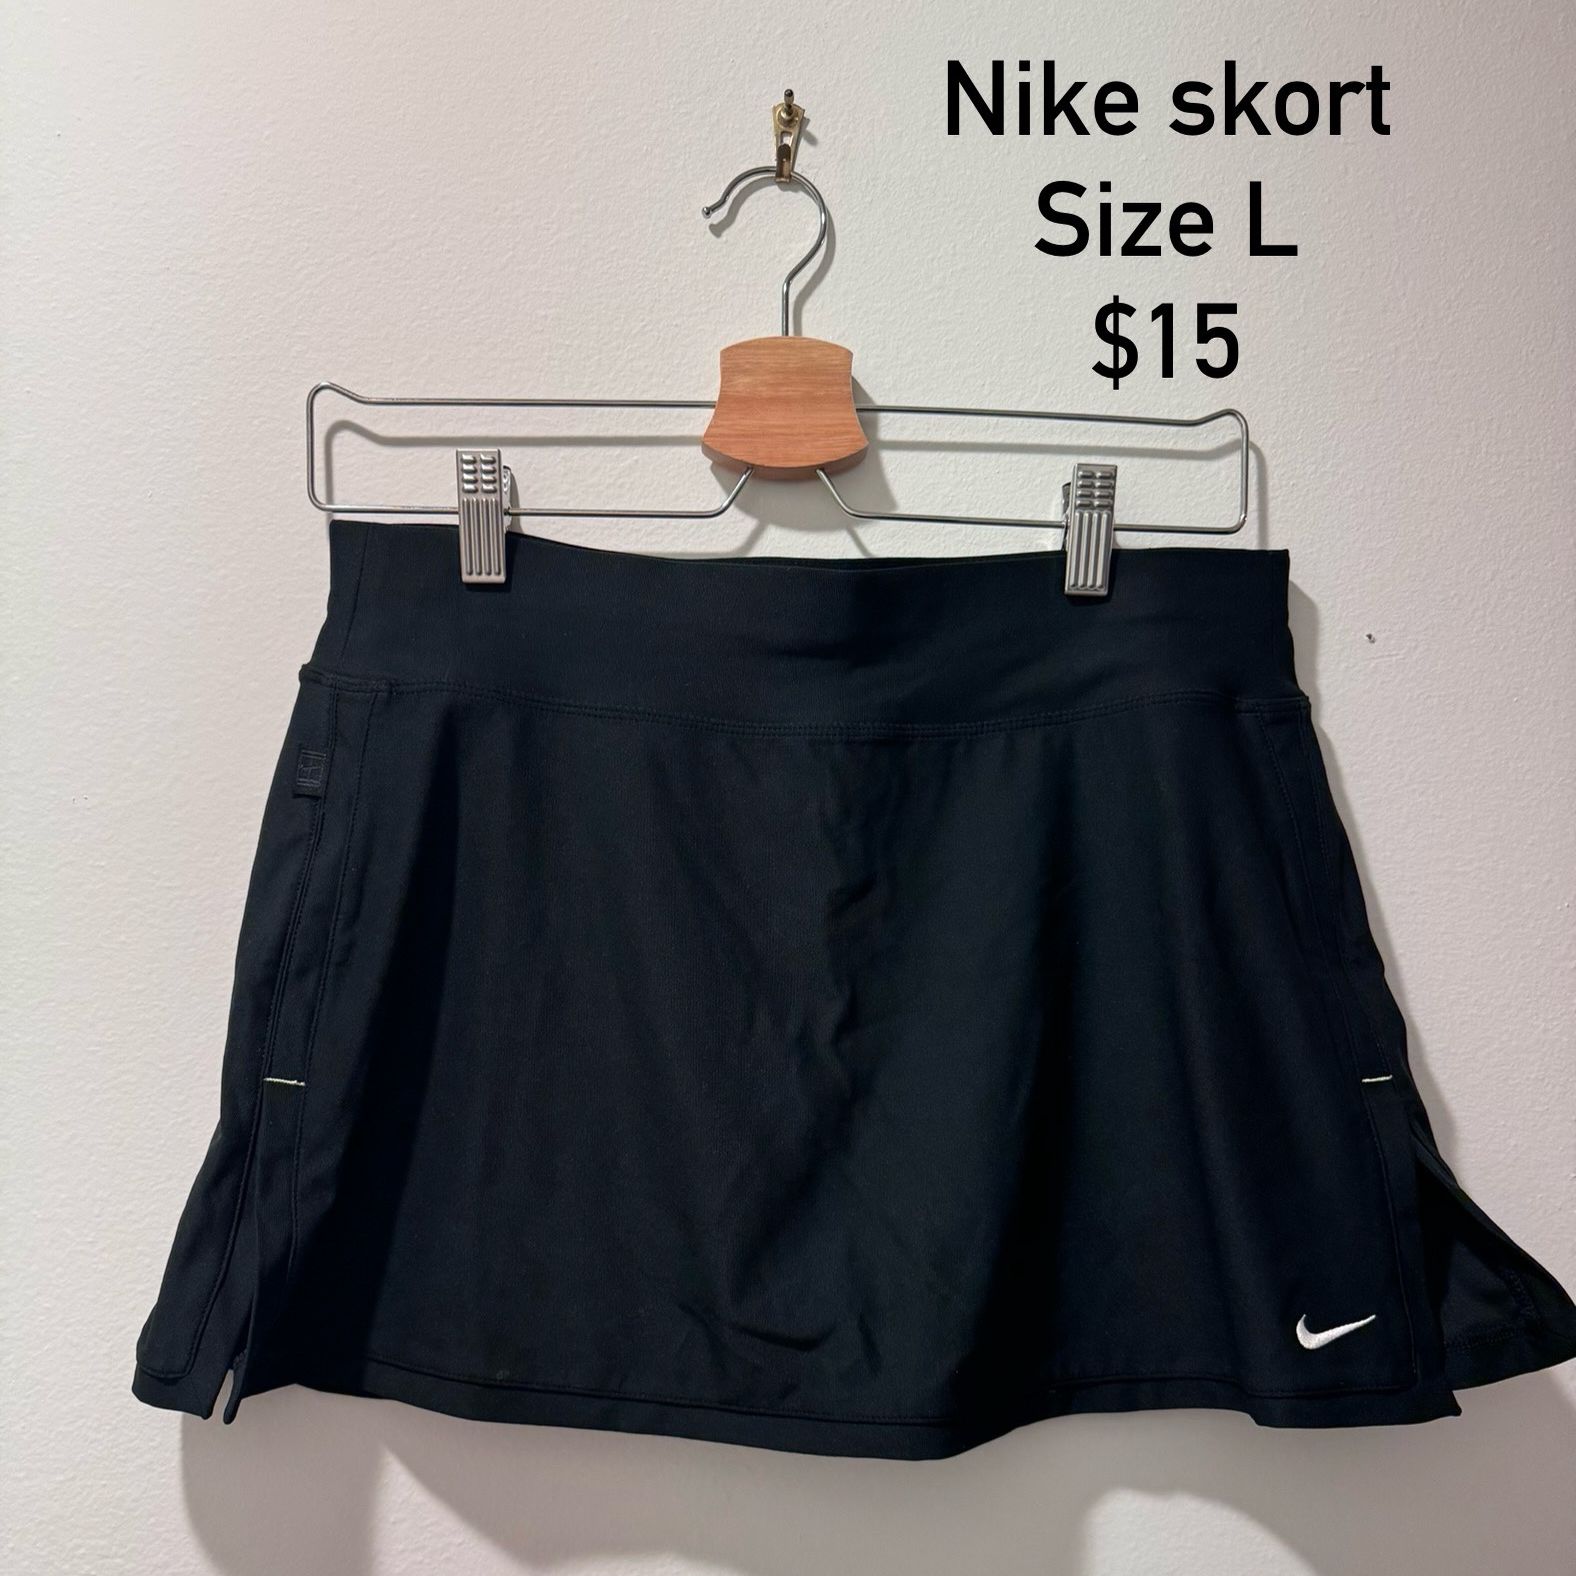 Nike Skort